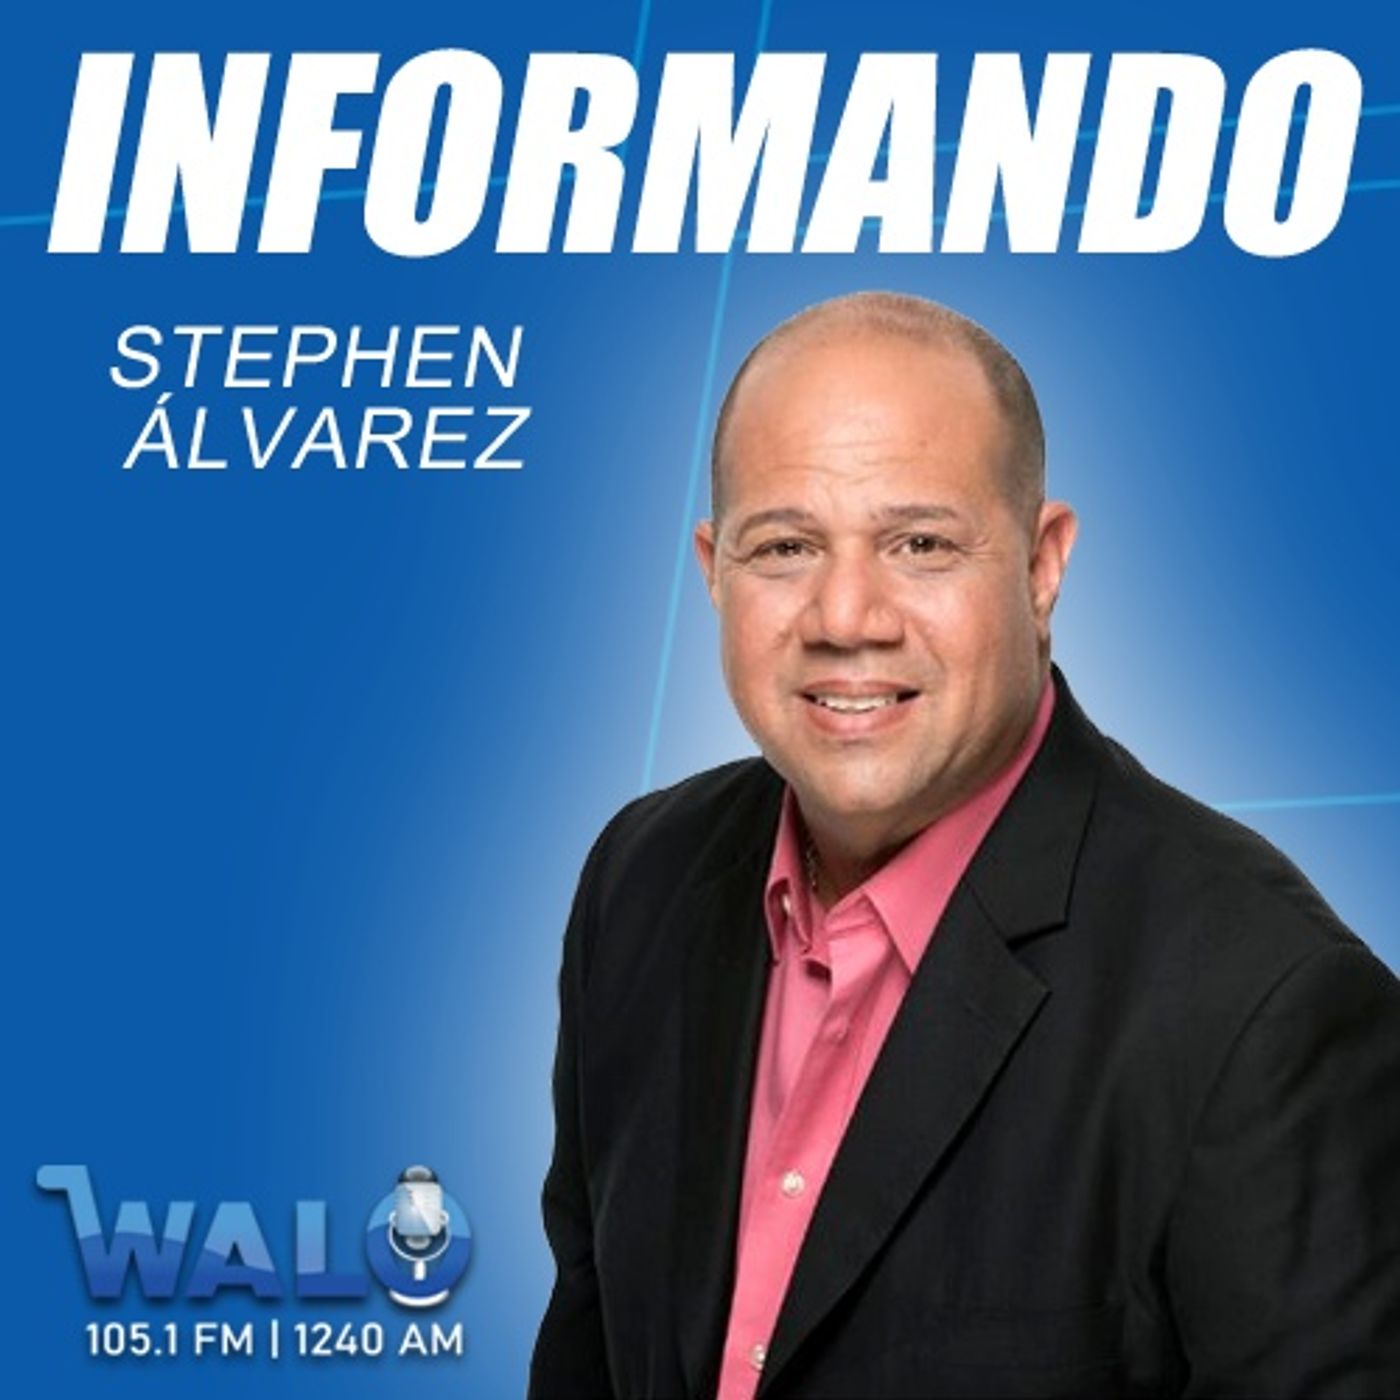 Informando con Stephen Alvarez (18 marzo 2023)